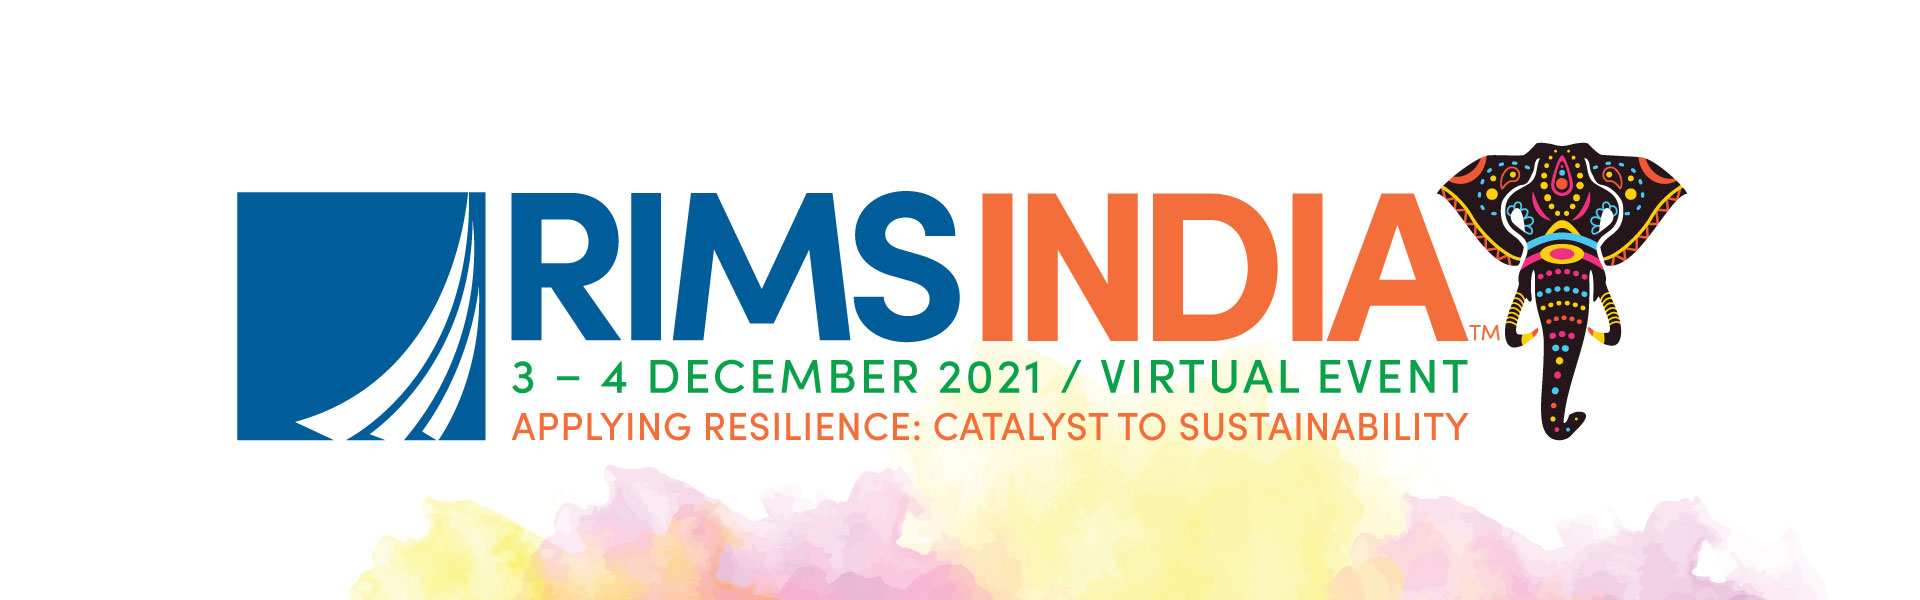 RIMS India 2021